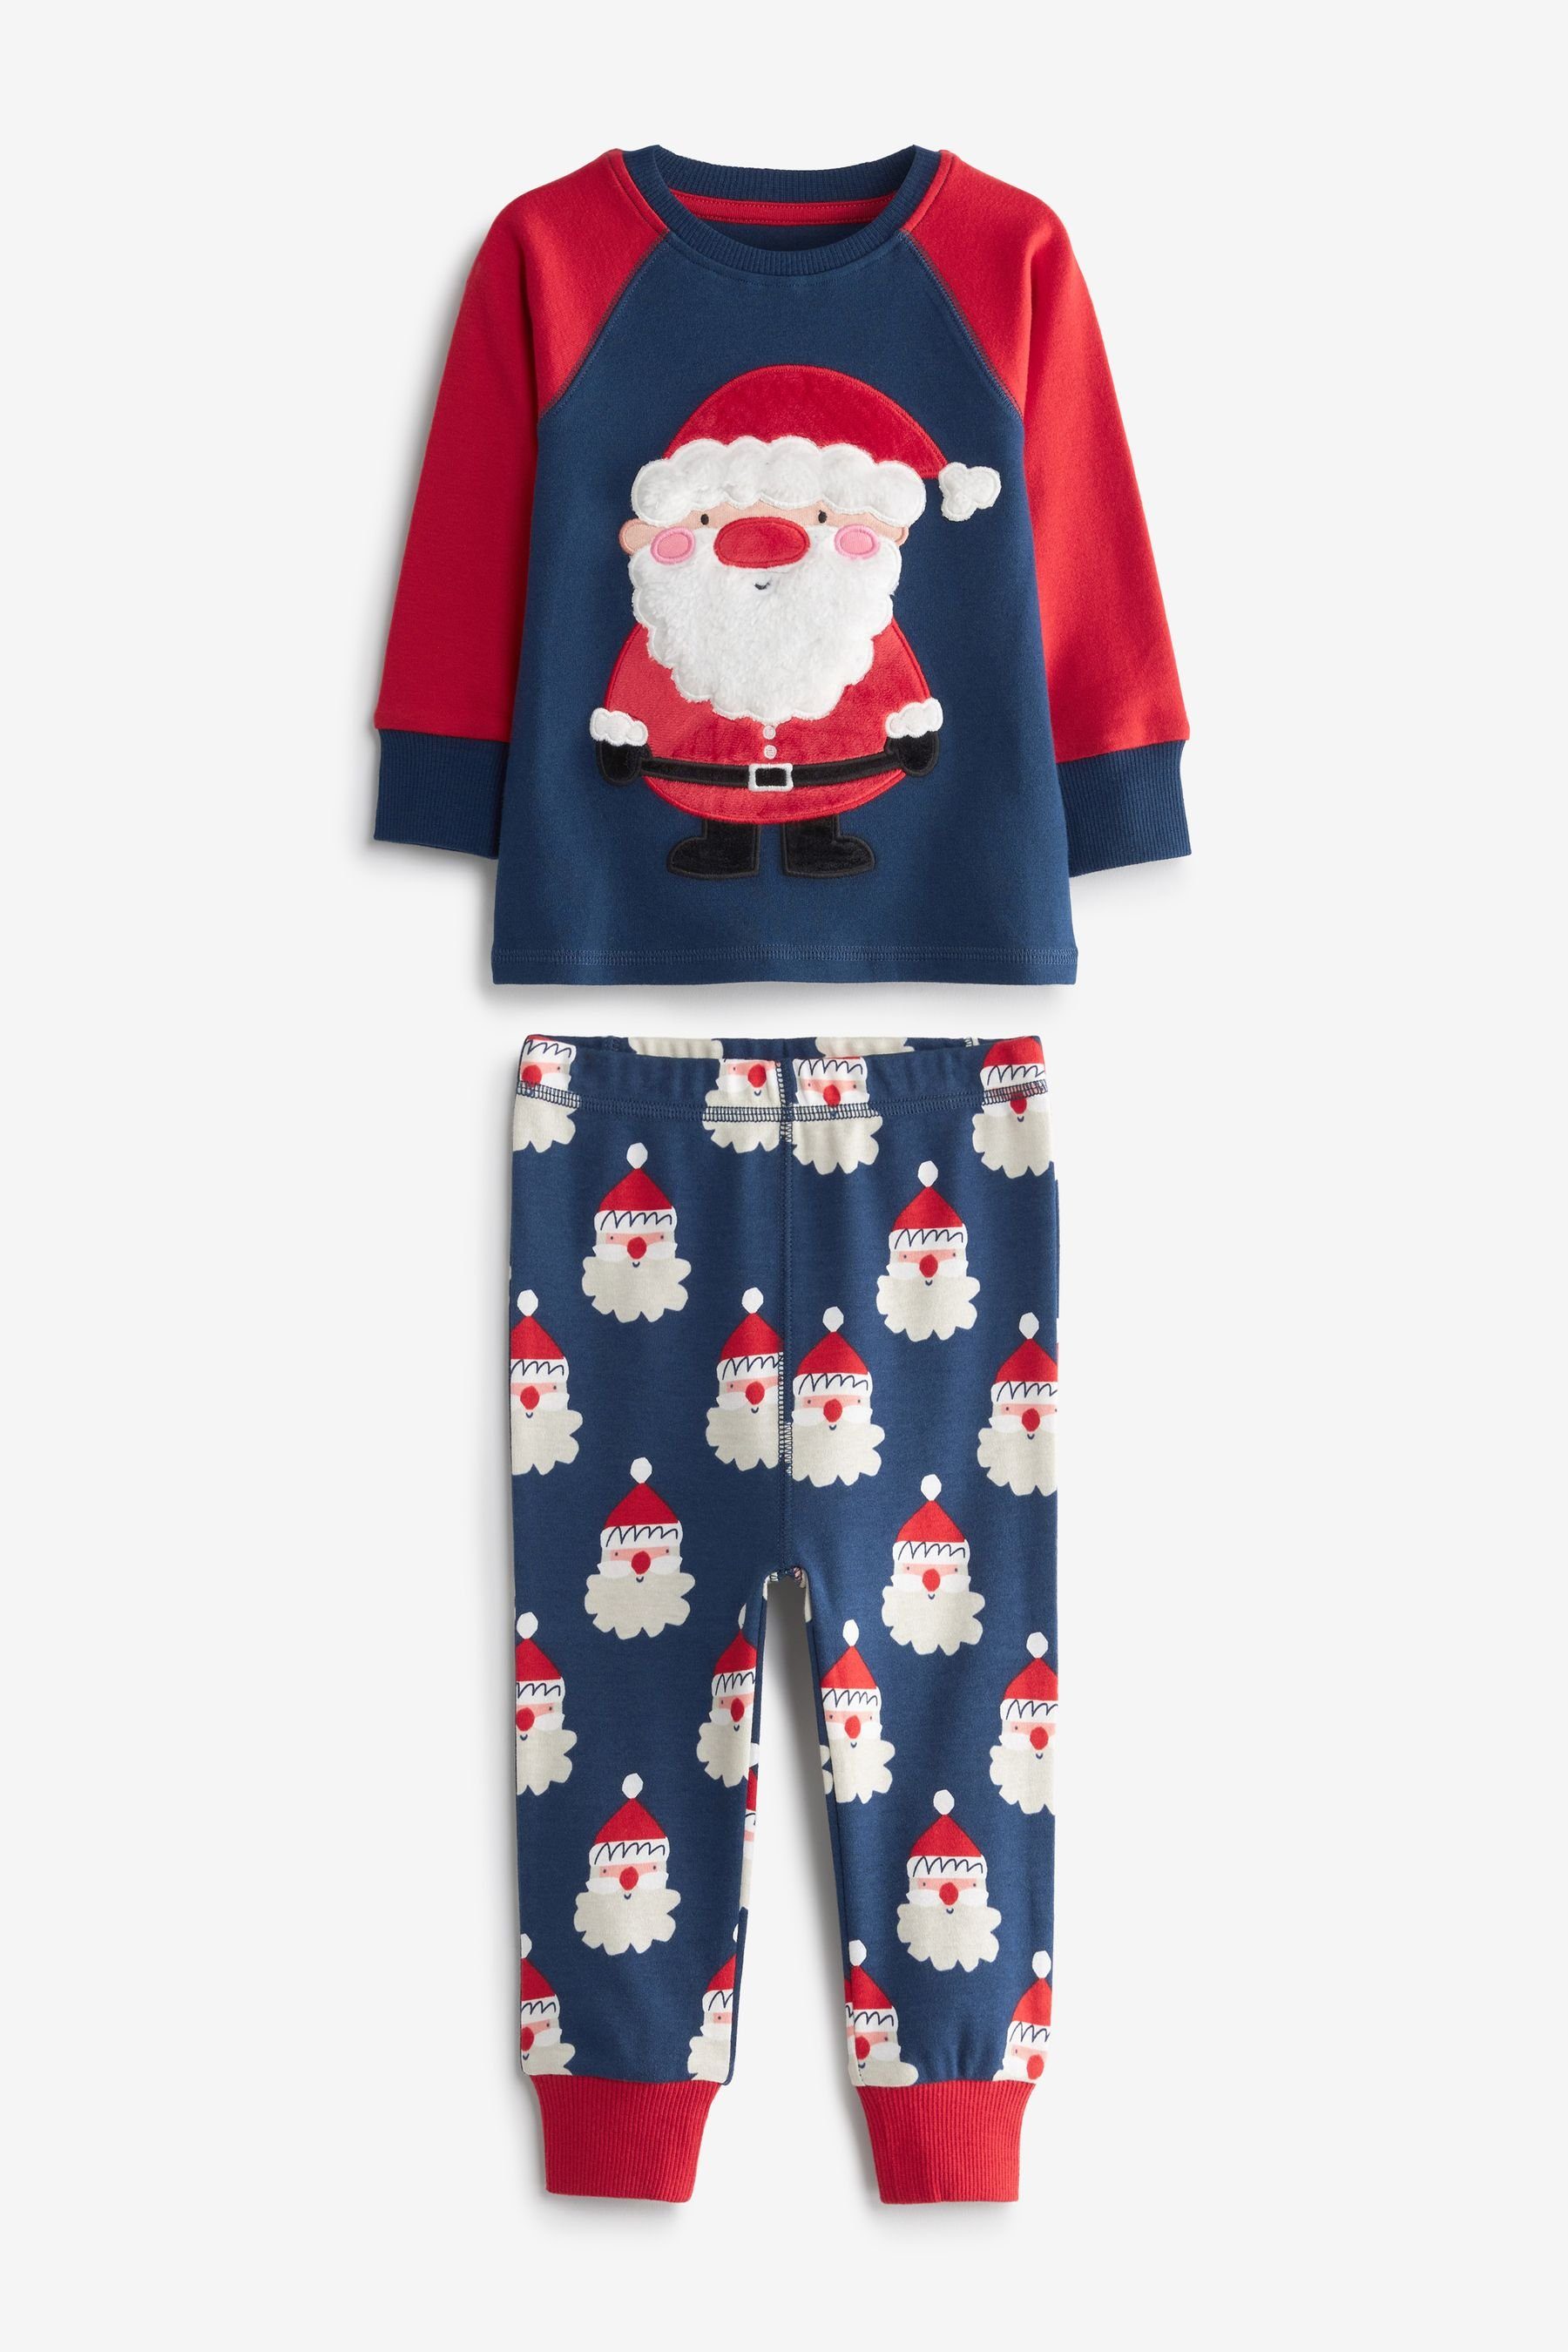 Next Schlafanzug Weihnachtlicher Pyjama (2 tlg) Navy Blue Santa